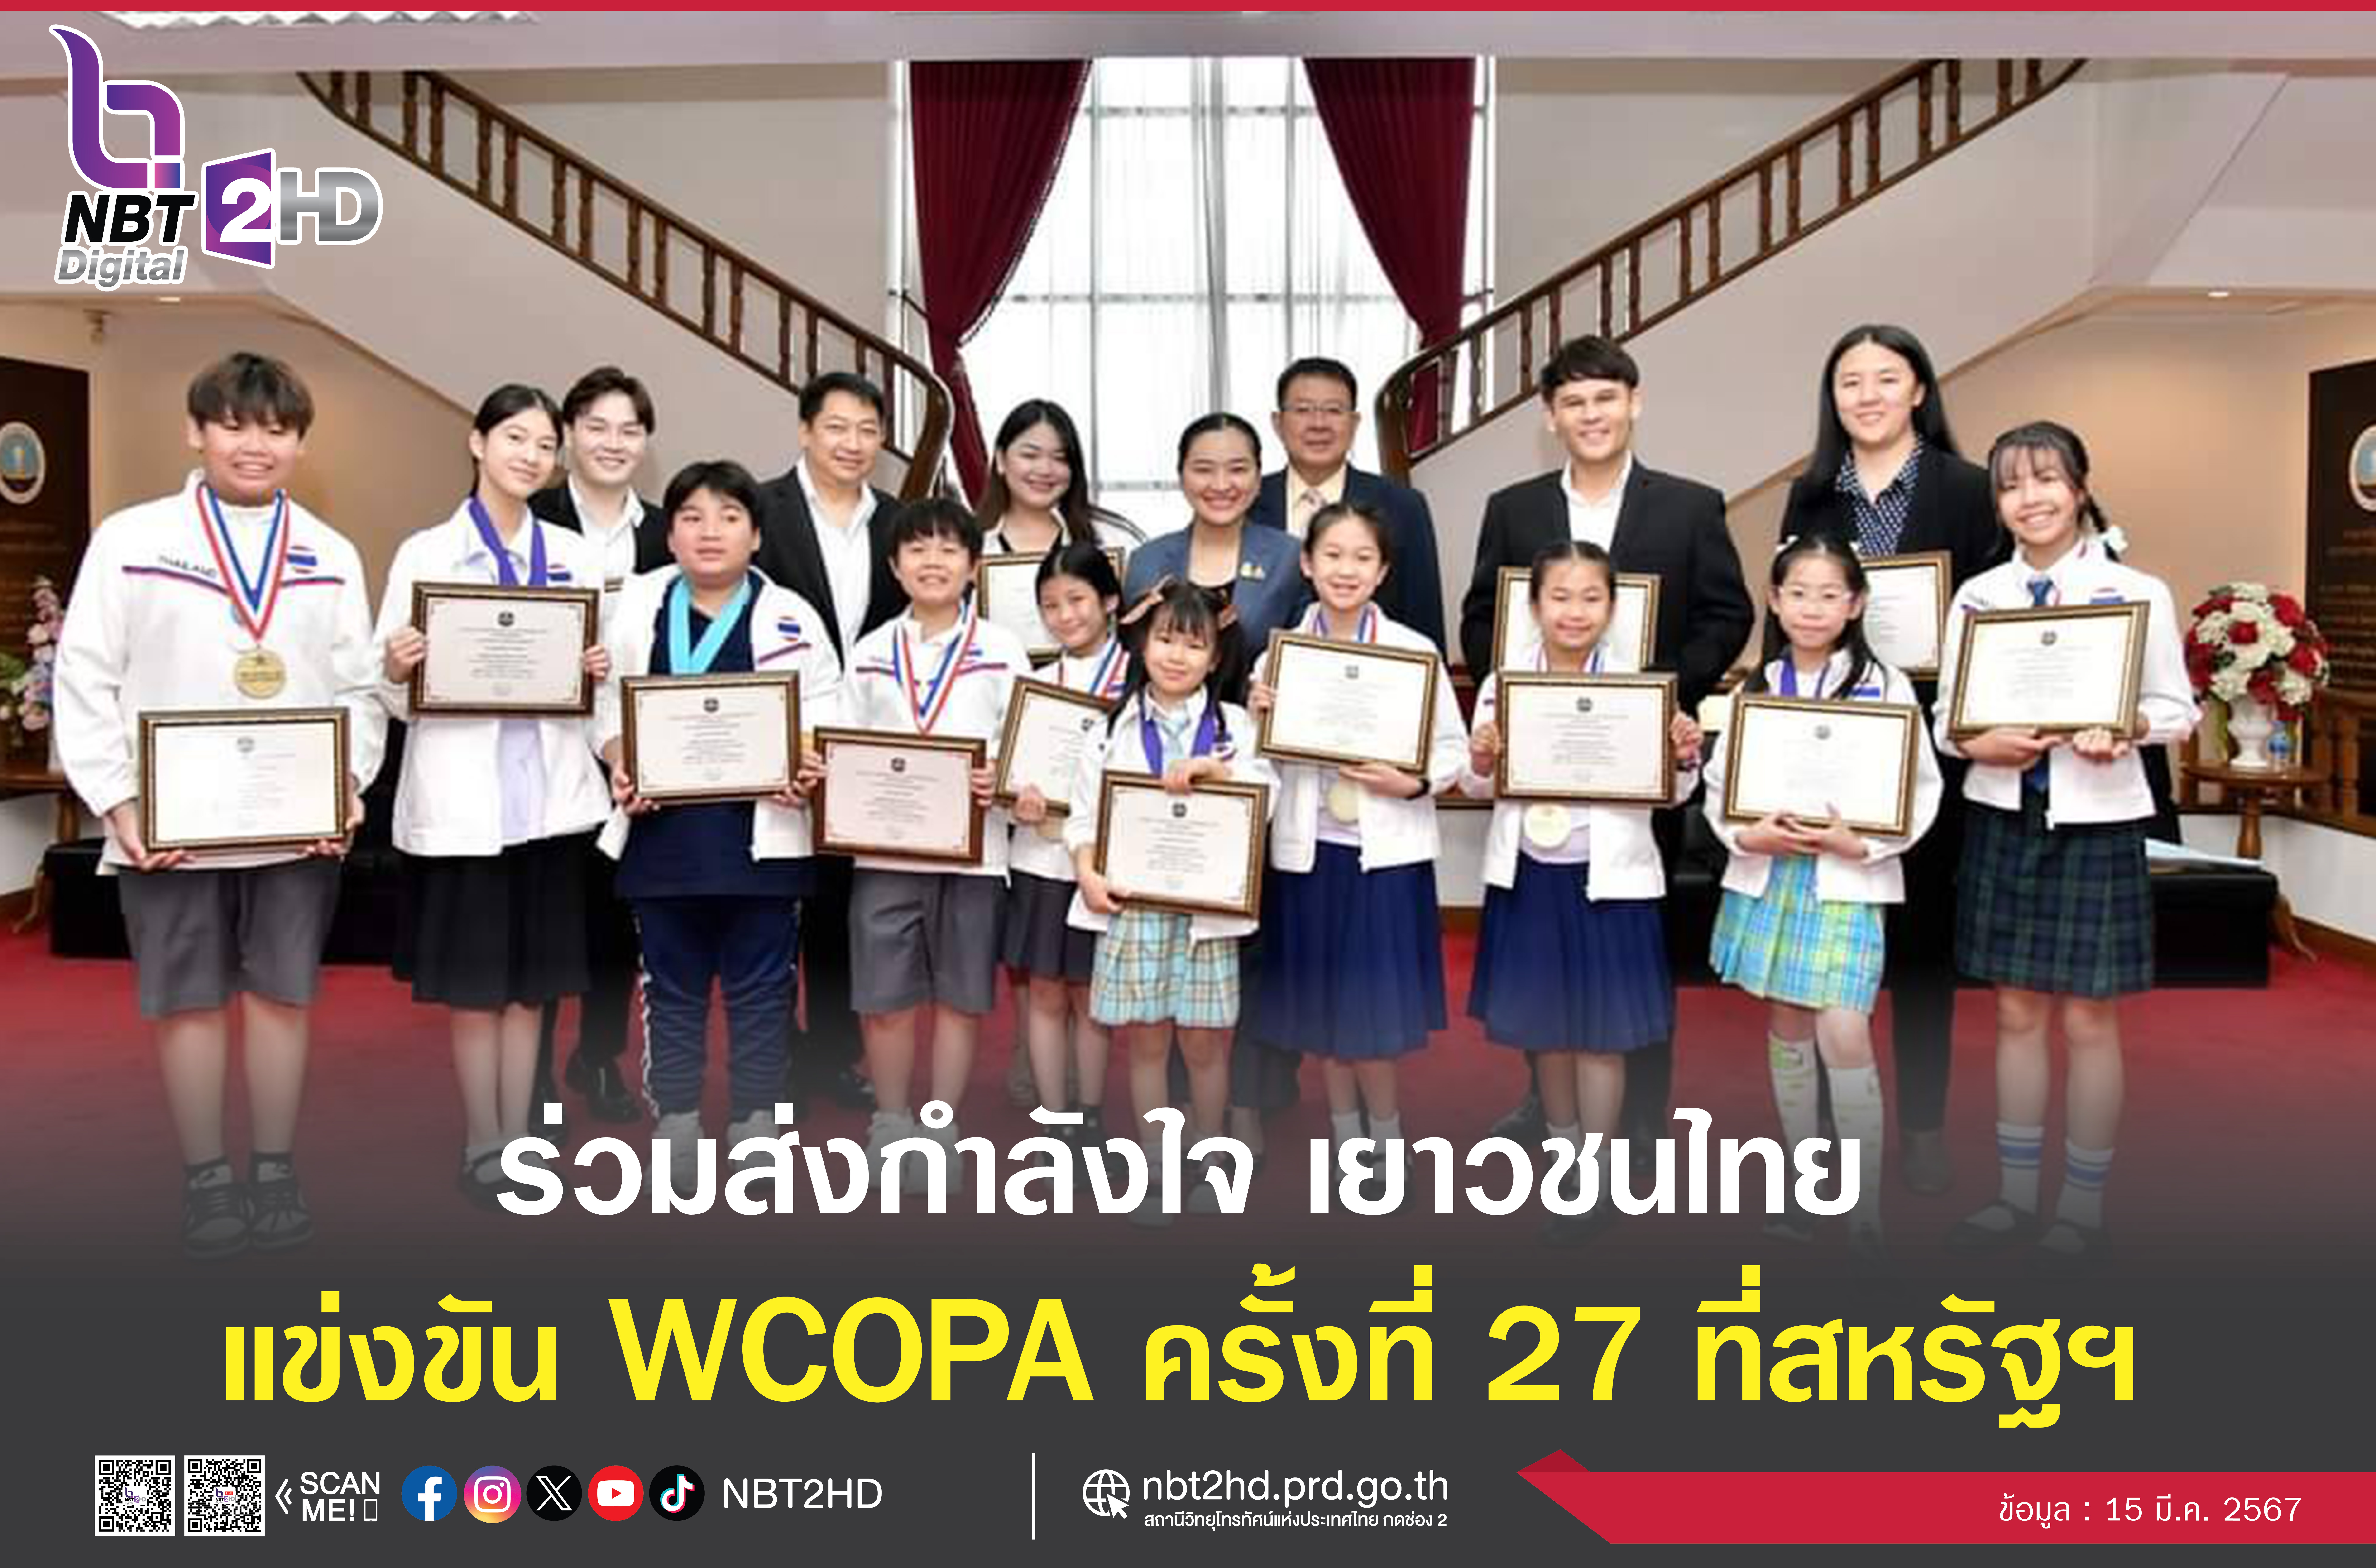 เชิญชวนร่วมส่งกำลังใจ ให้คณะเยาวชนไทยในการแข่งขัน WCOPA ครั้งที่ 27 ณ สหรัฐอเมริกา